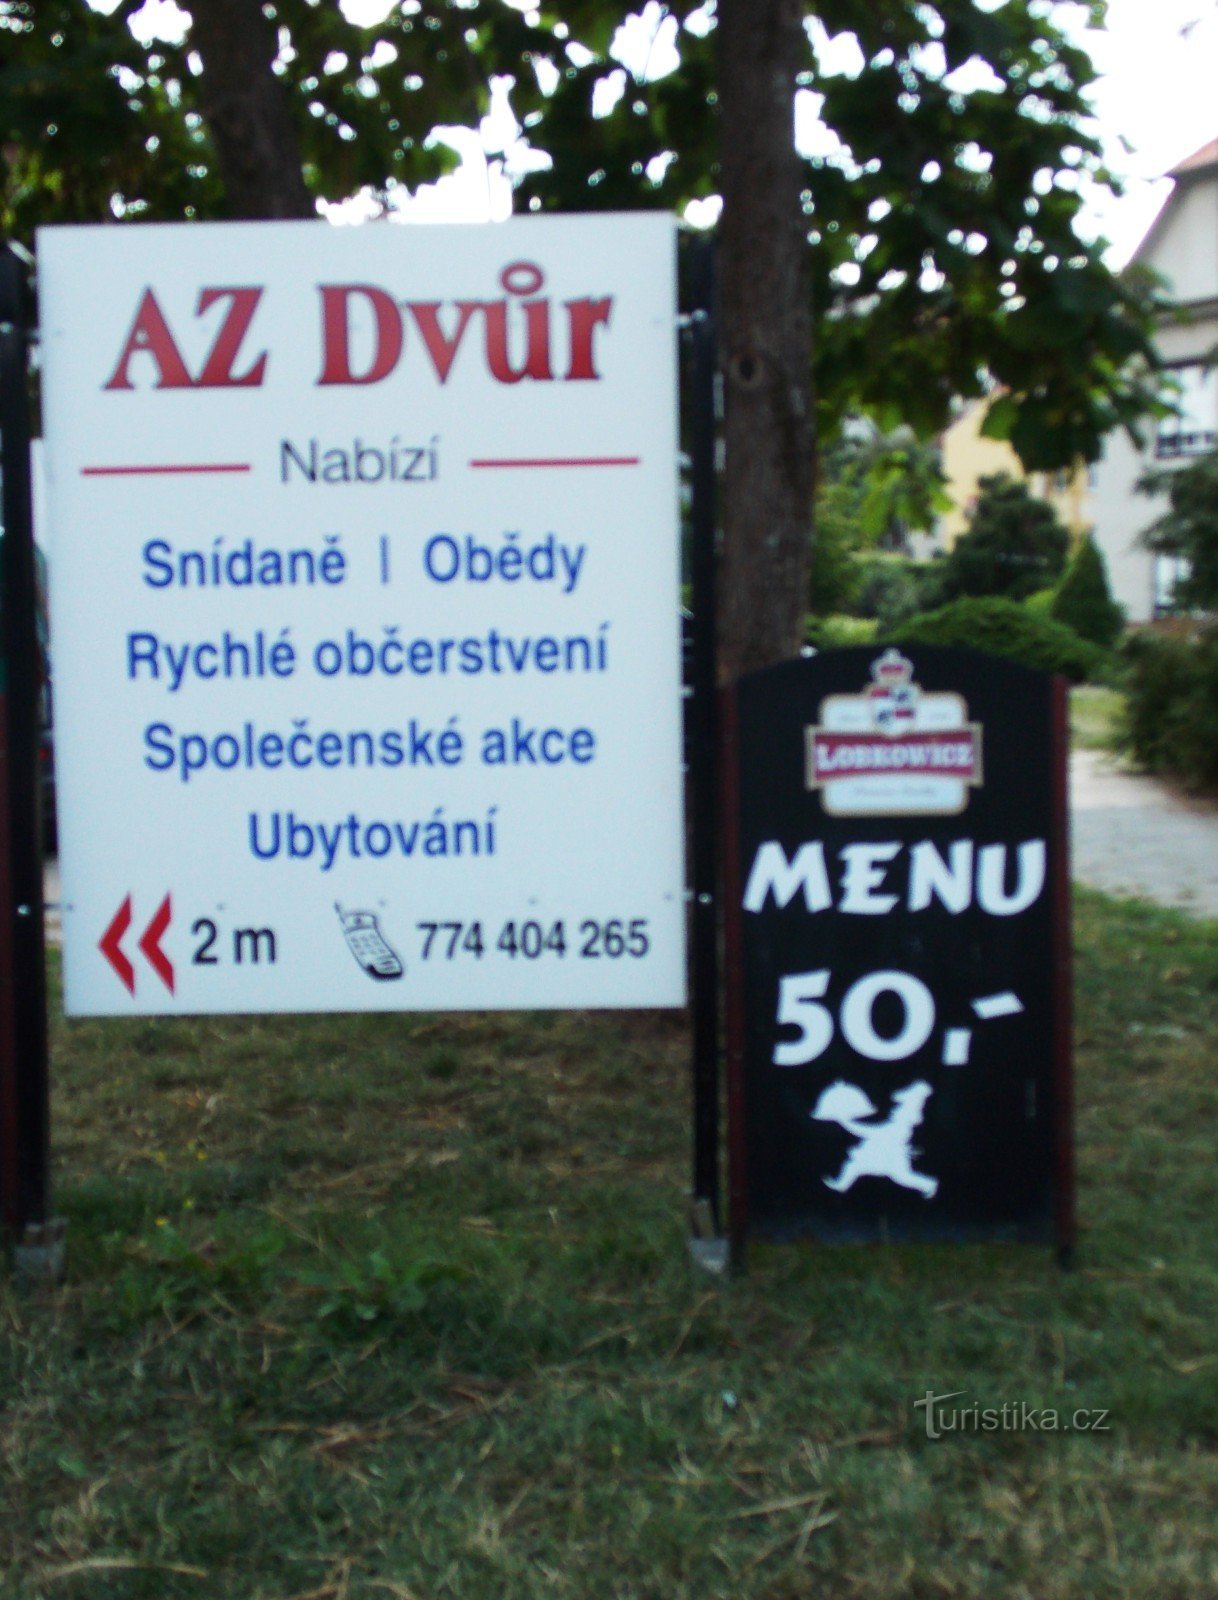 Ресторан AZ dvůr в Лугачовицах